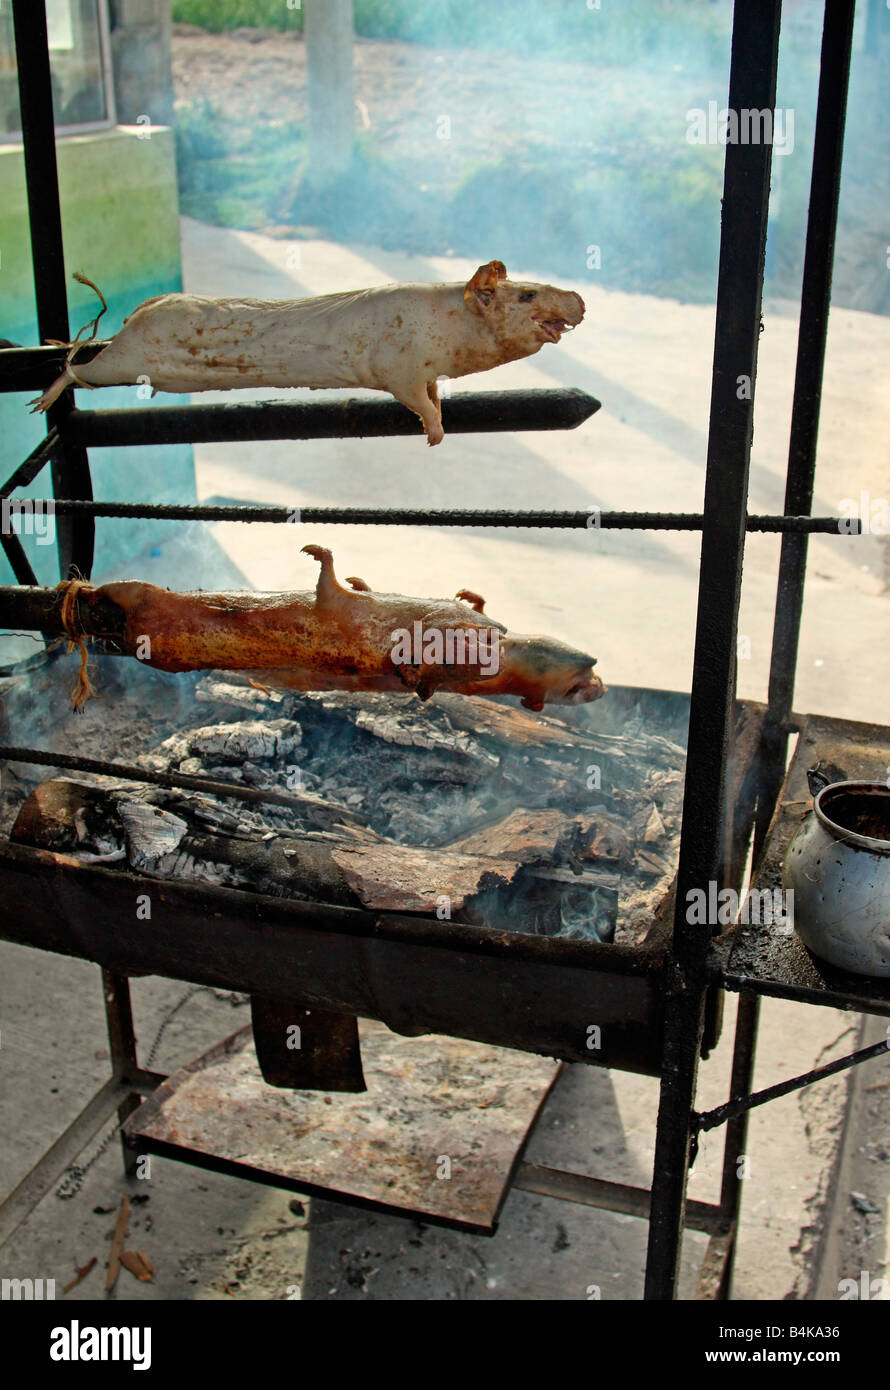 Guinea pigs (cuy) barbecued at roadside, Panamerican Highway, near Salcedo, Ecuador Stock Photo